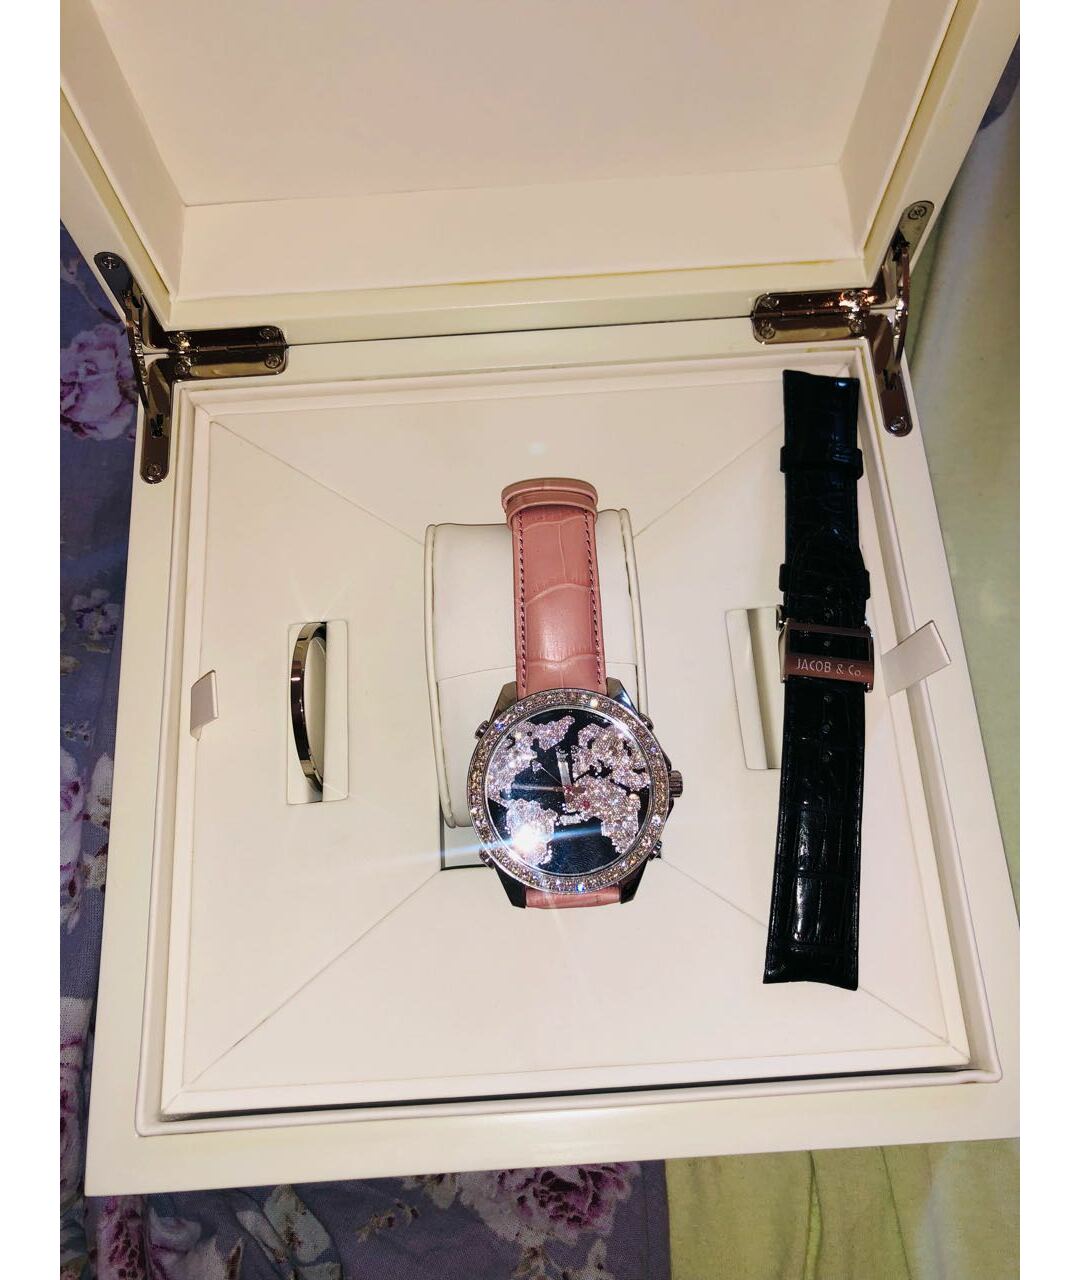 JACOB&CO Серебряные стальные часы, фото 3